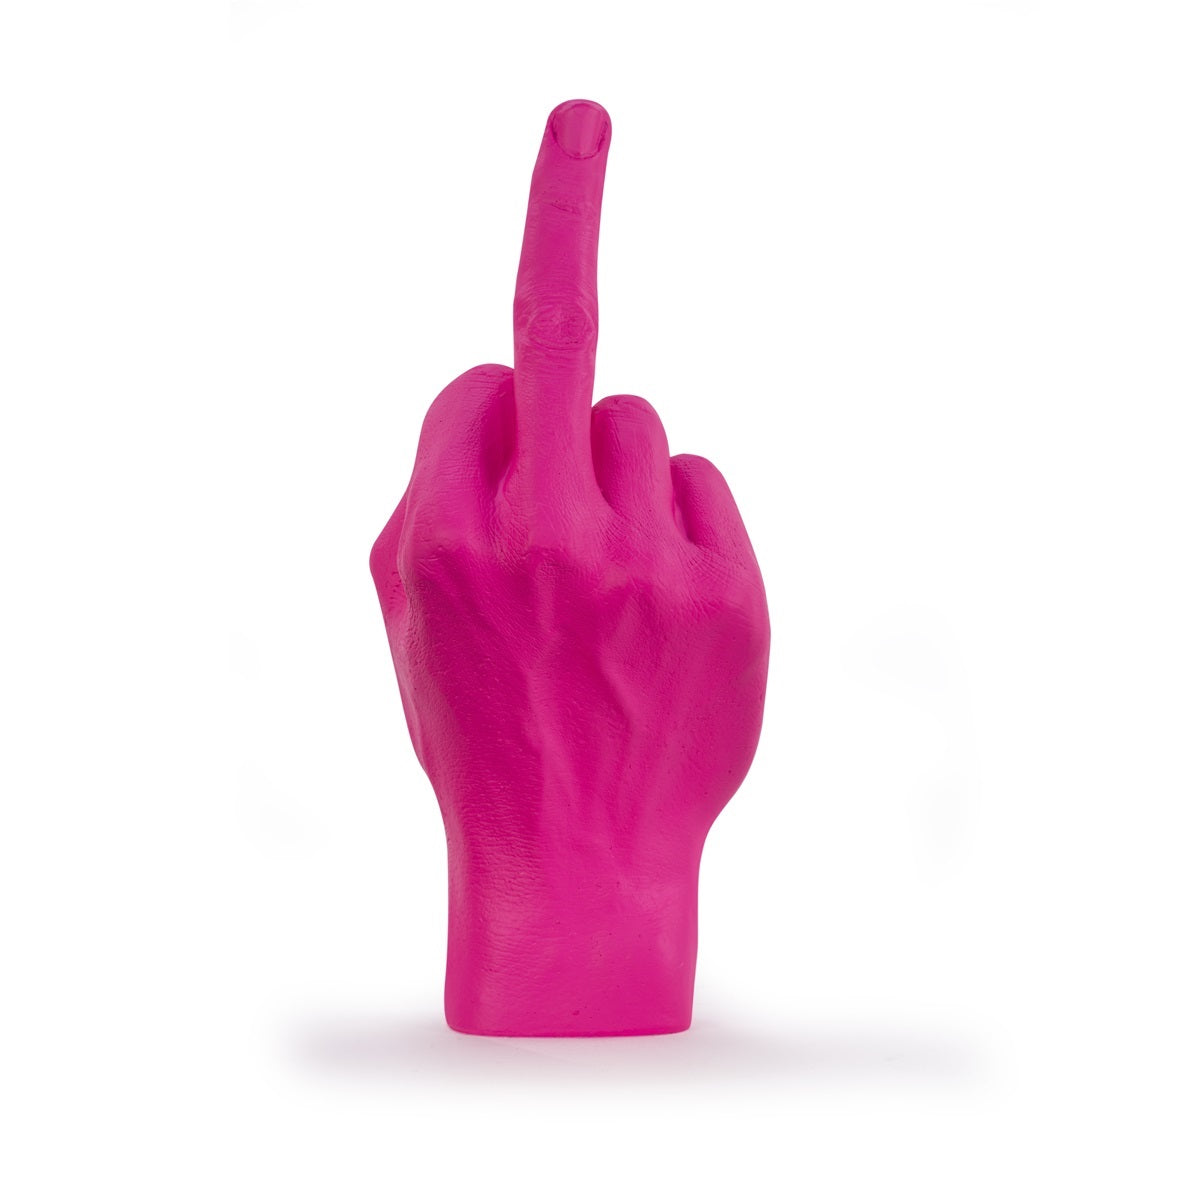 F**k Hand Sculpture - Pink